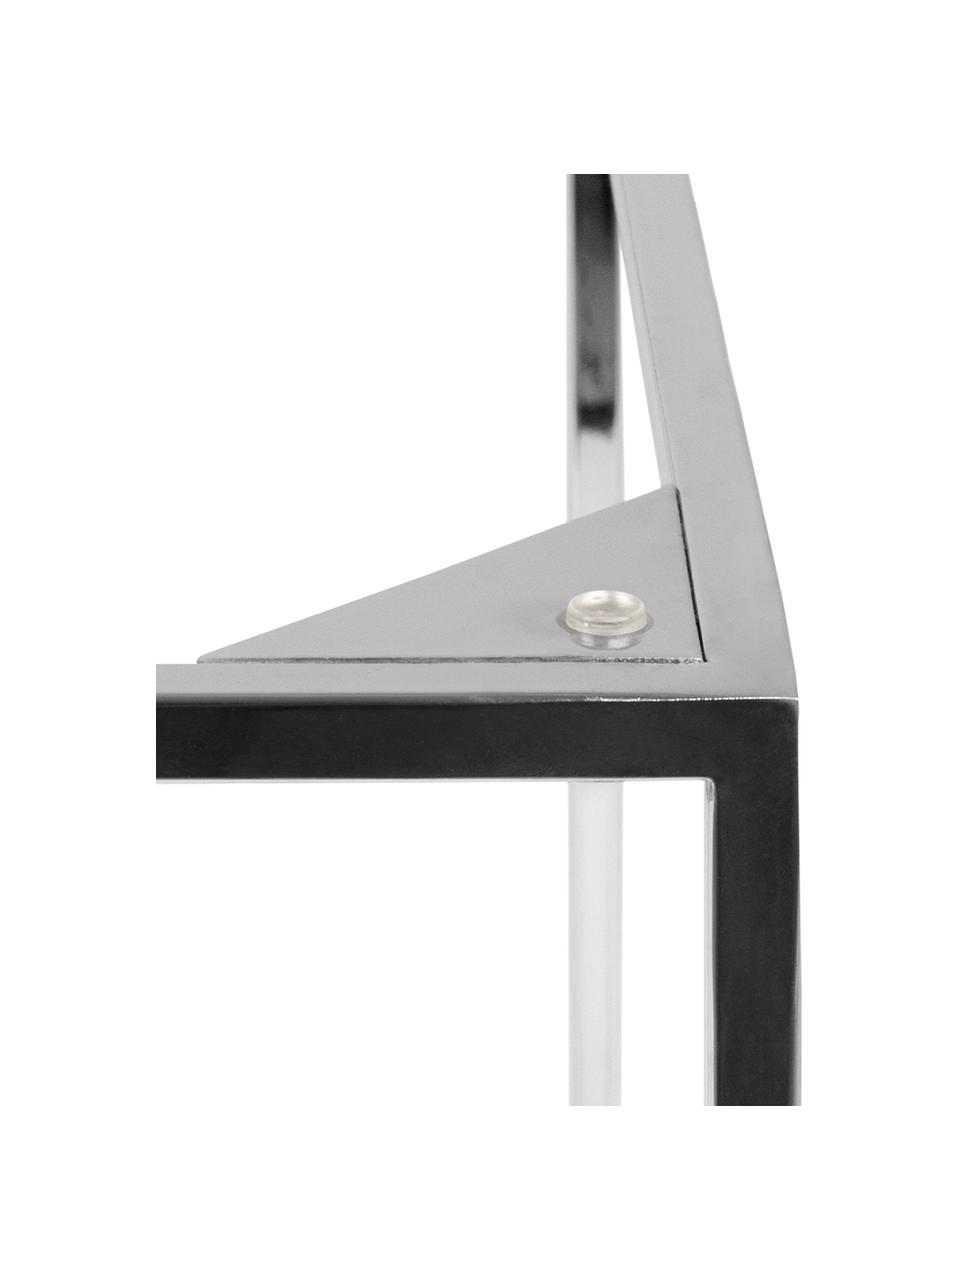 Mramorový odkládací stolek Gleam, Deska stolu: bílá, mramorovaná Rám: chromová